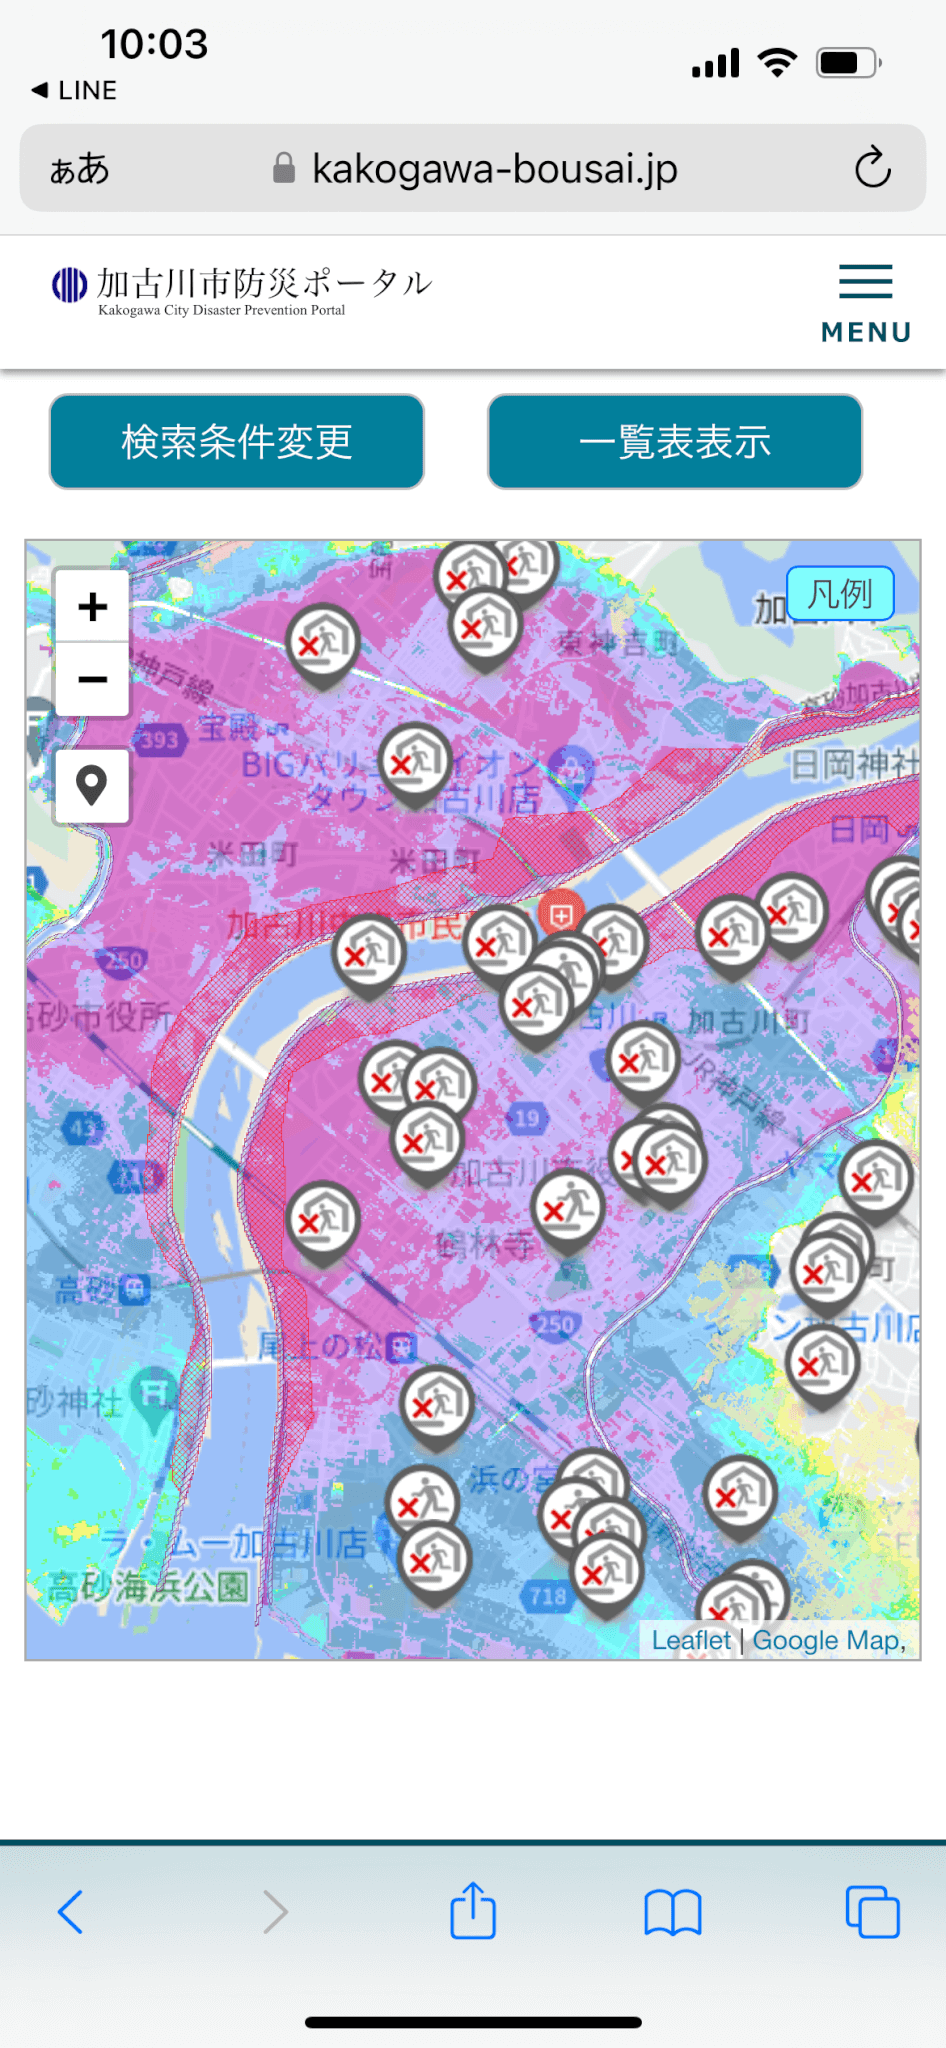 加古川市防災ポータルハザードマップ